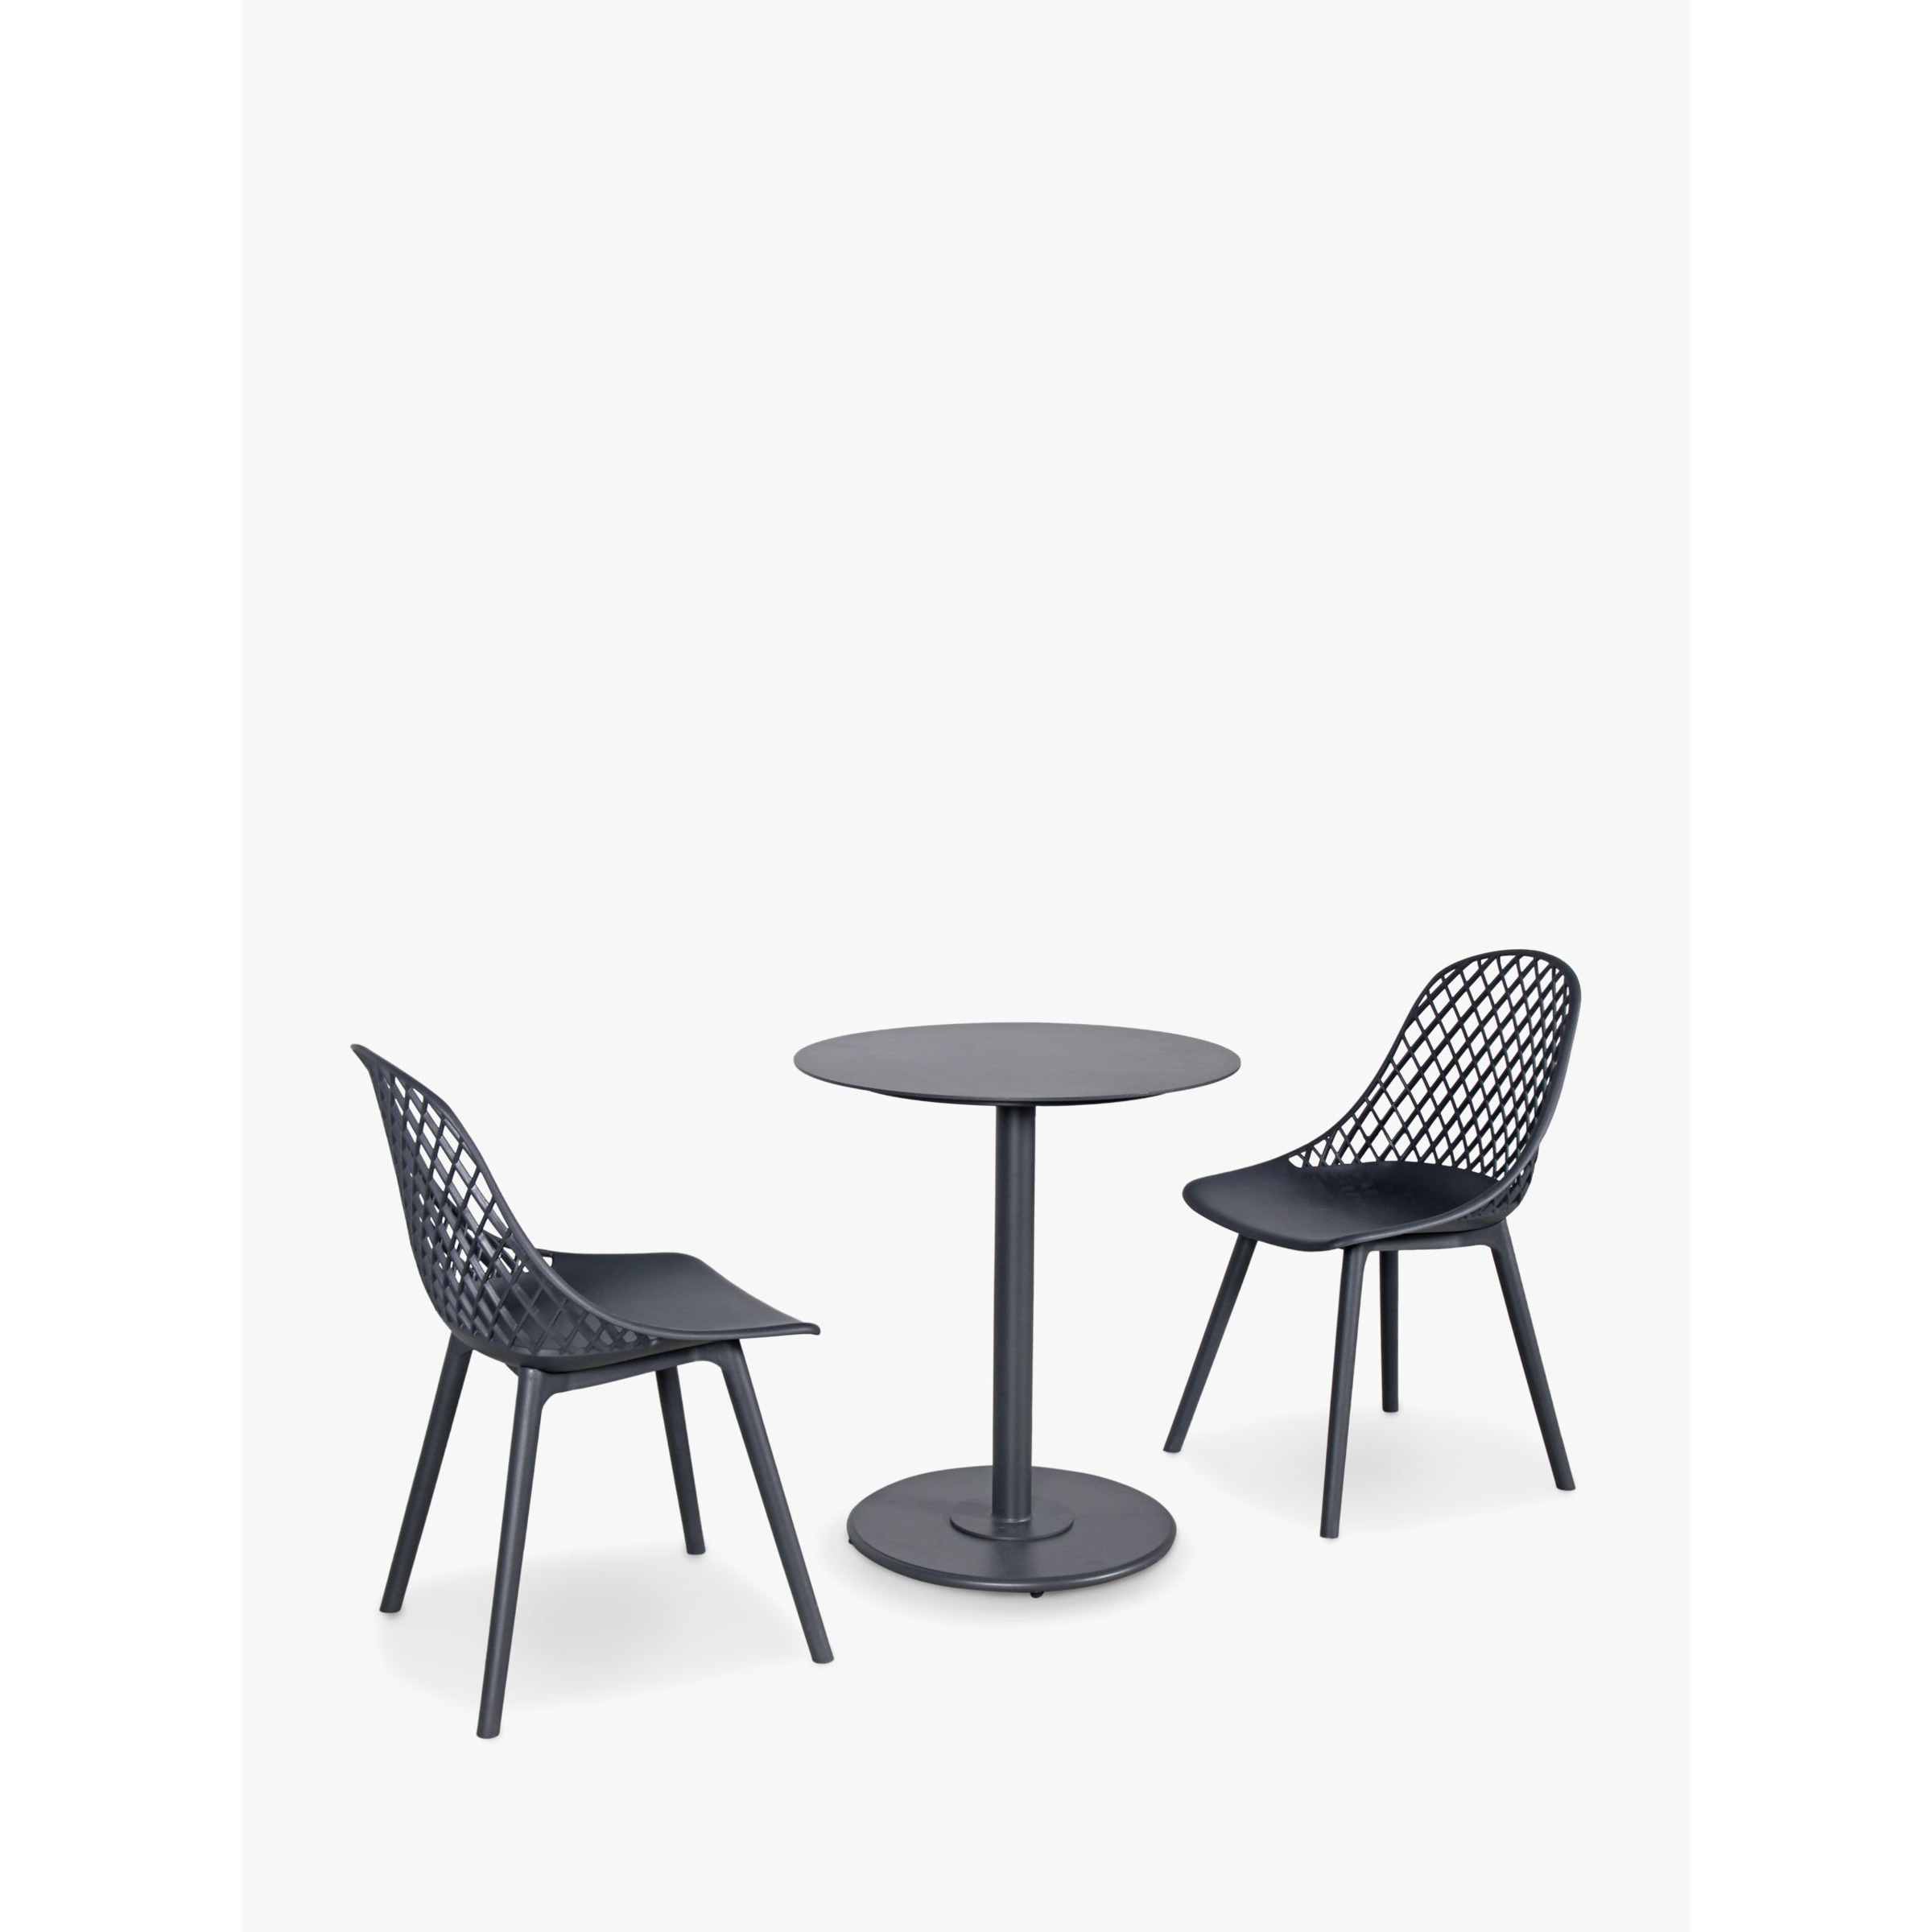 KETTLER Café Milano 2-Seater Garden Bistro Table & Chairs Set, Grey - image 1